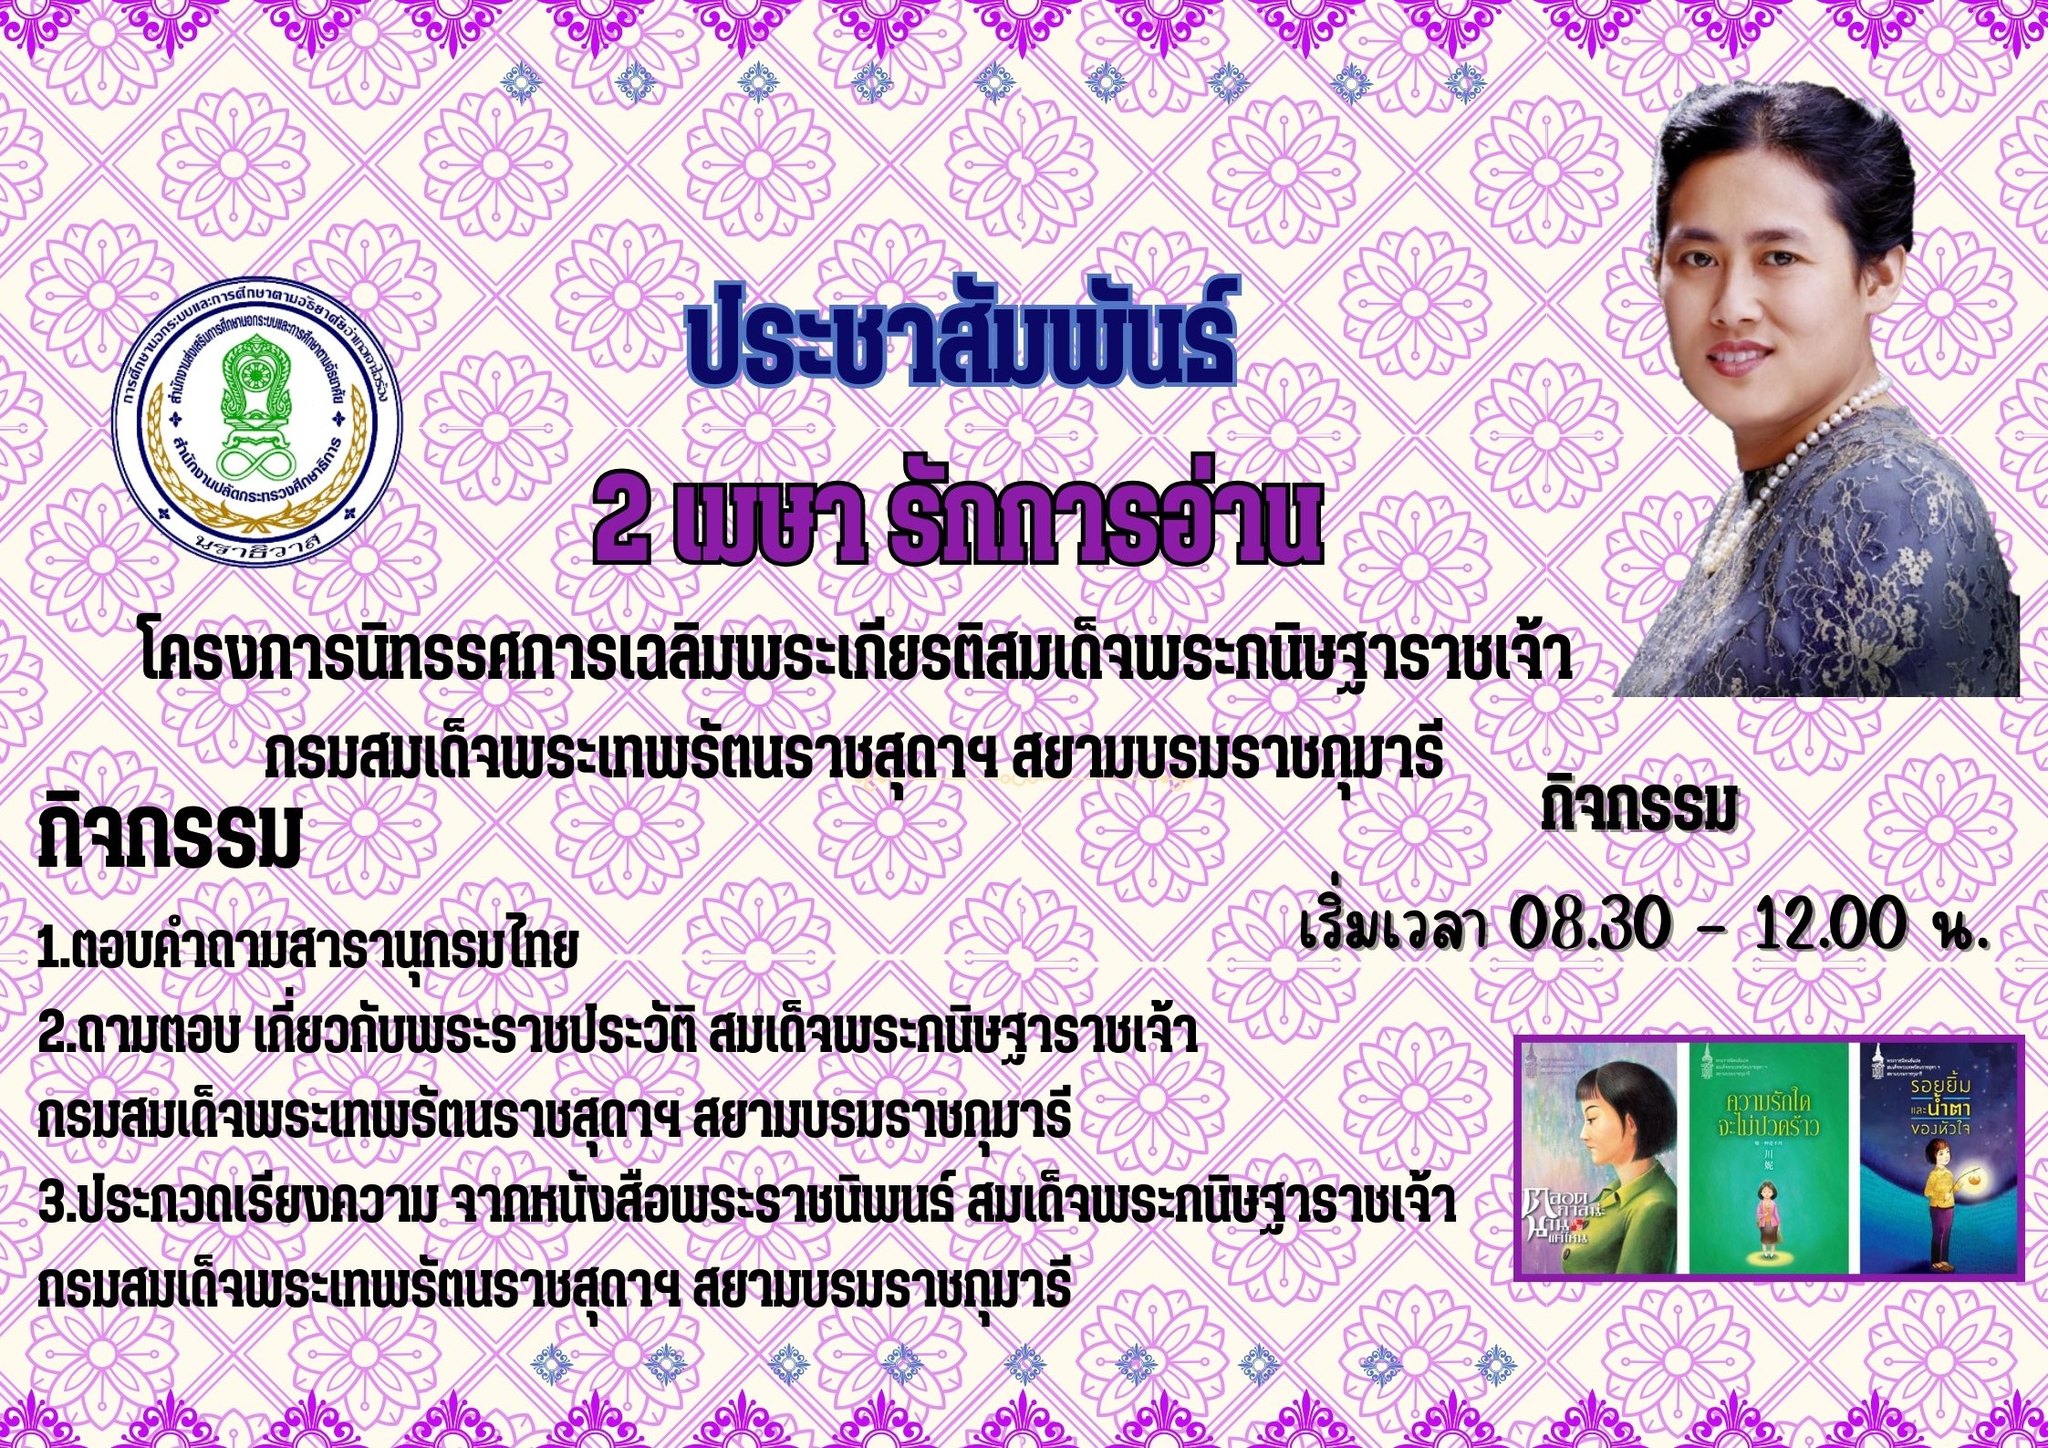 วันที่ 2 เมษายน วันคล้ายวันพระราชสมภพสมเด็จพระกนิษฐาธิราชเจ้า กรมสมเด็จพระเทพรัตนราชสุดาฯ สยามบรมราชกุมารี “เจ้าฟ้านักอ่าน ของปวงชนชาวไทย”